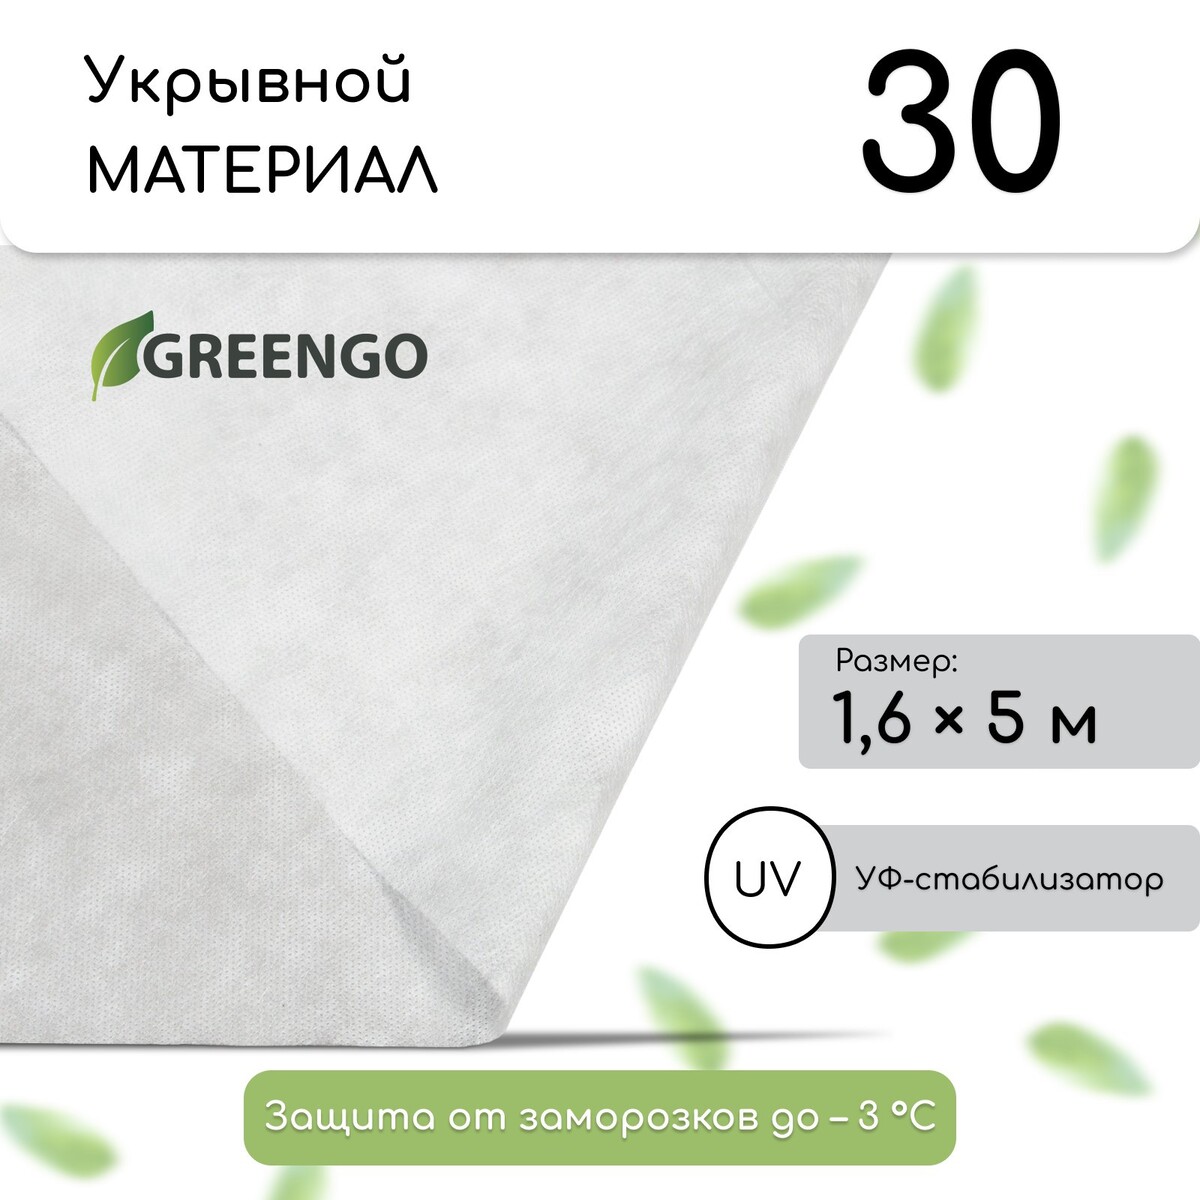 Материал укрывной, 5 × 1,6 м, плотность 30 г/м², спанбонд с уф-стабилизатором, белый, greengo, эконом 30%